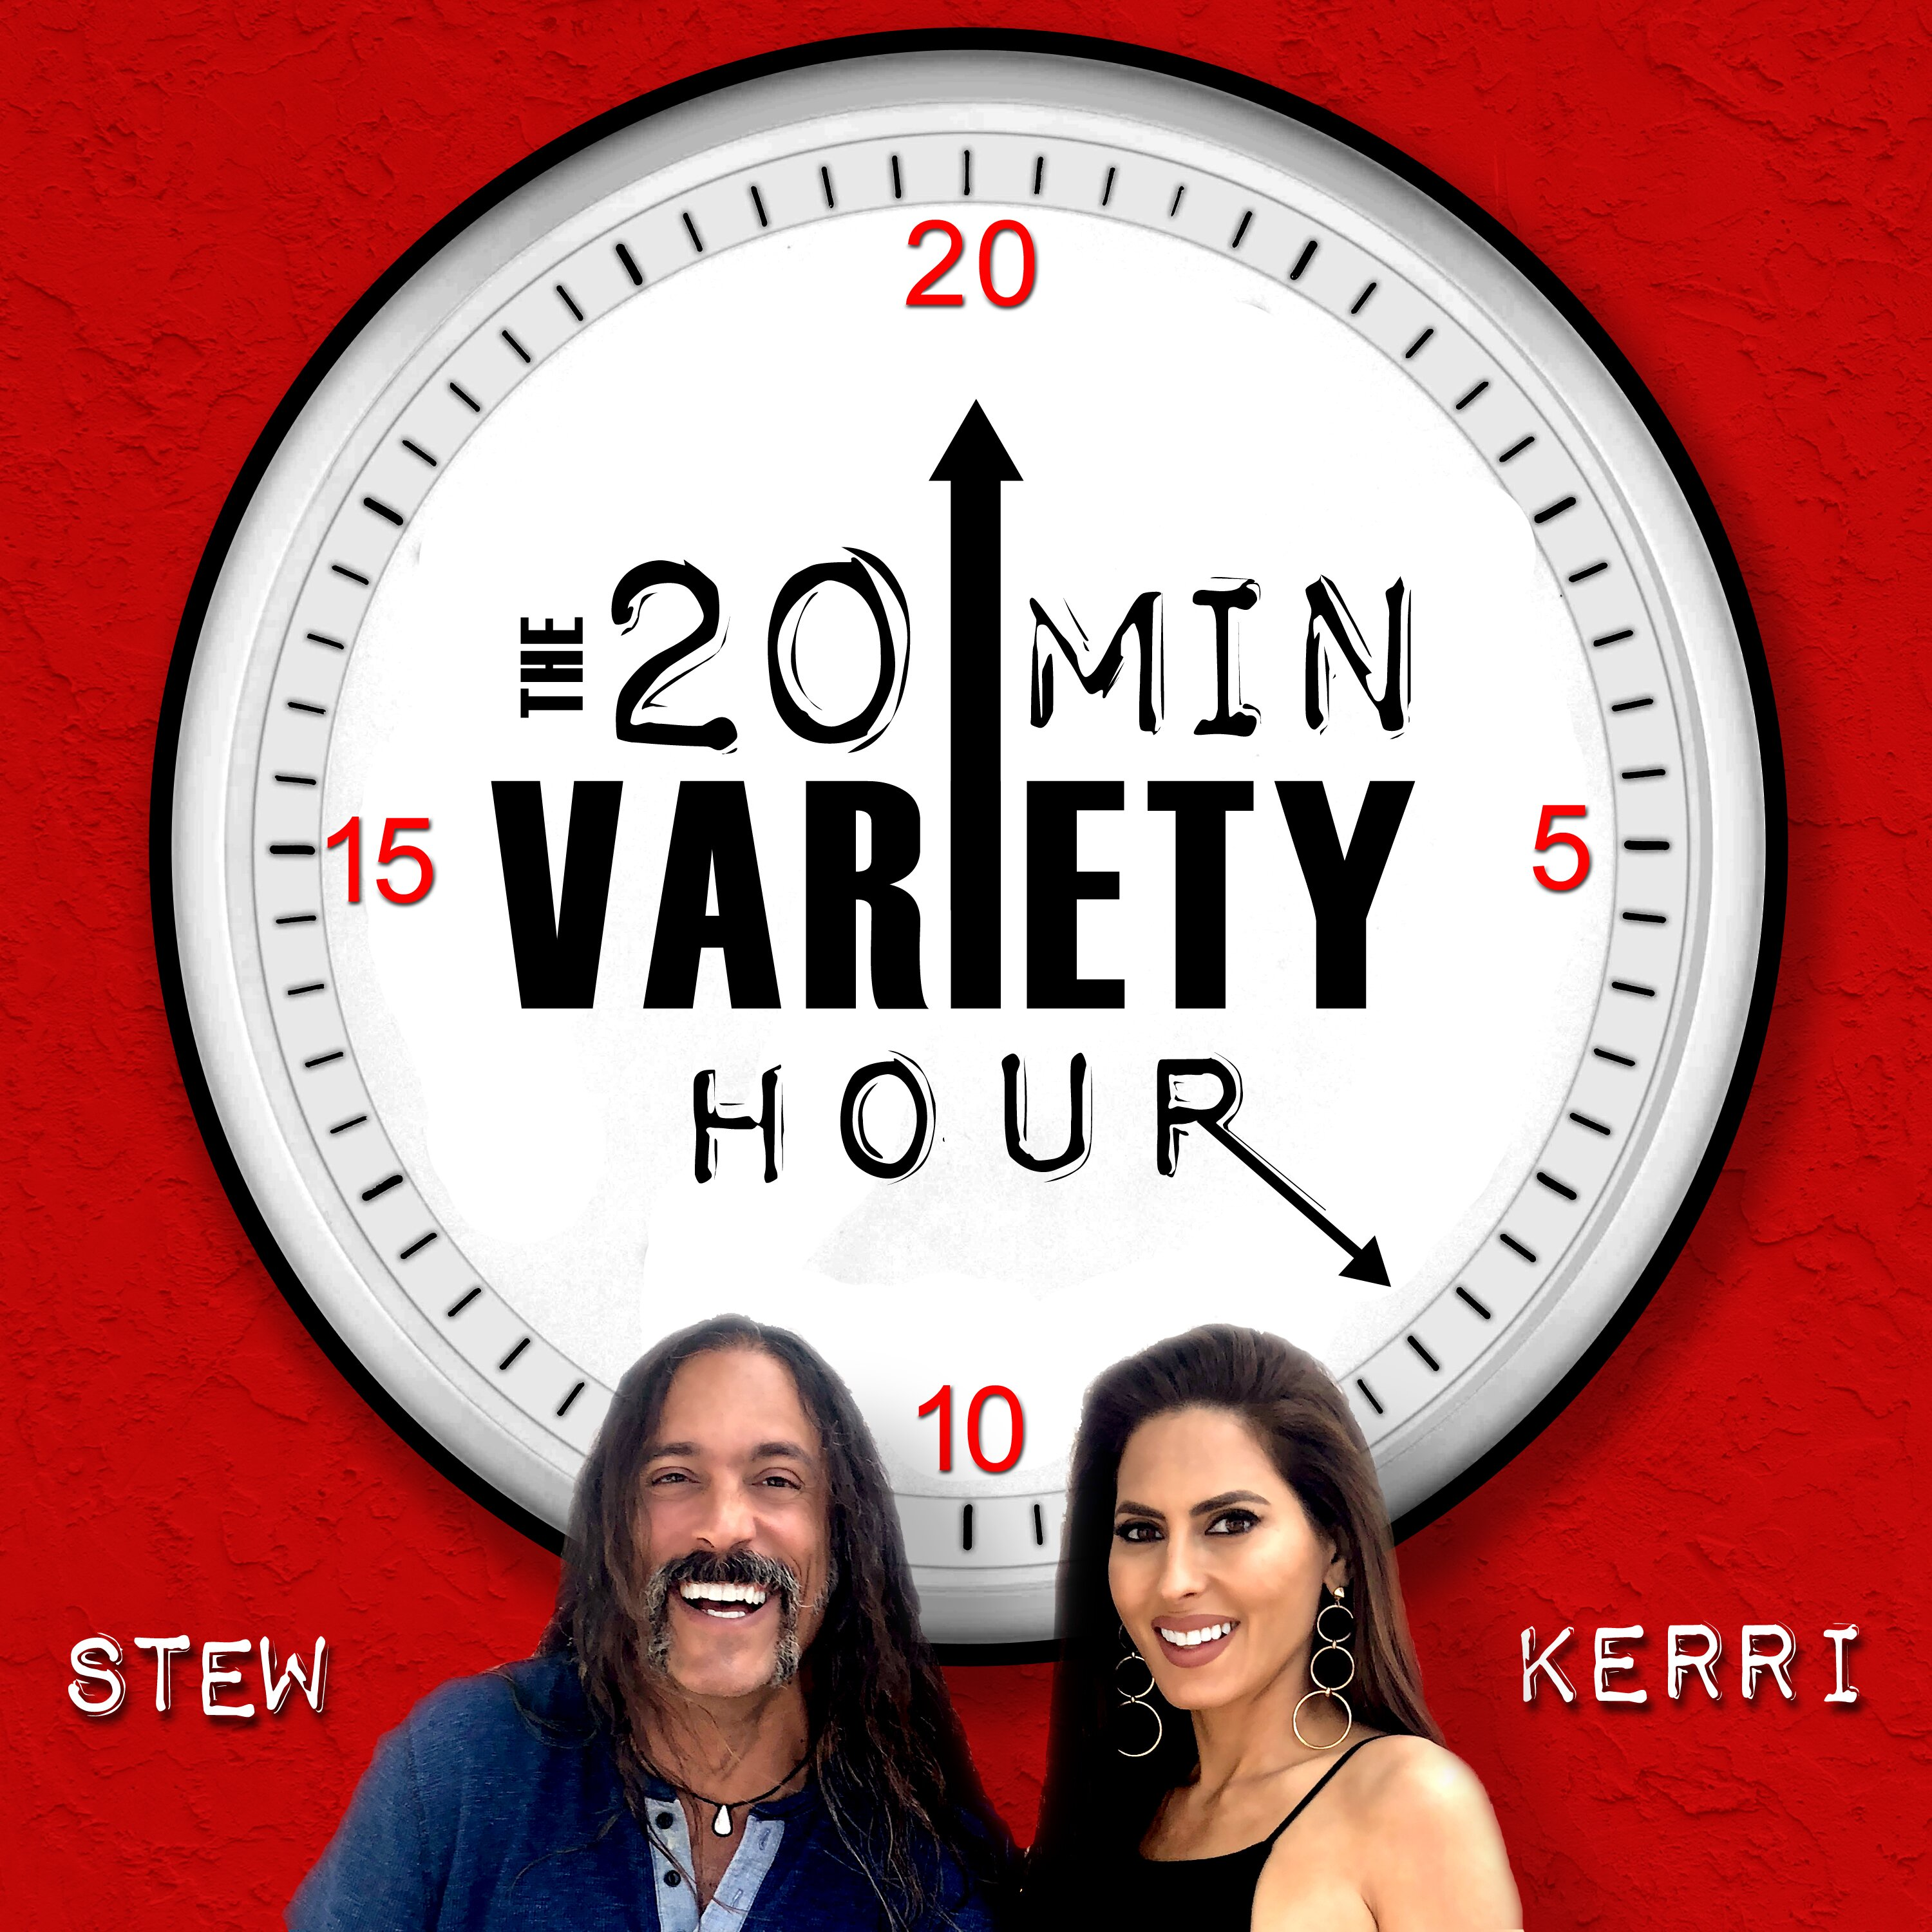 20 Min Variety Hour: Episode 6